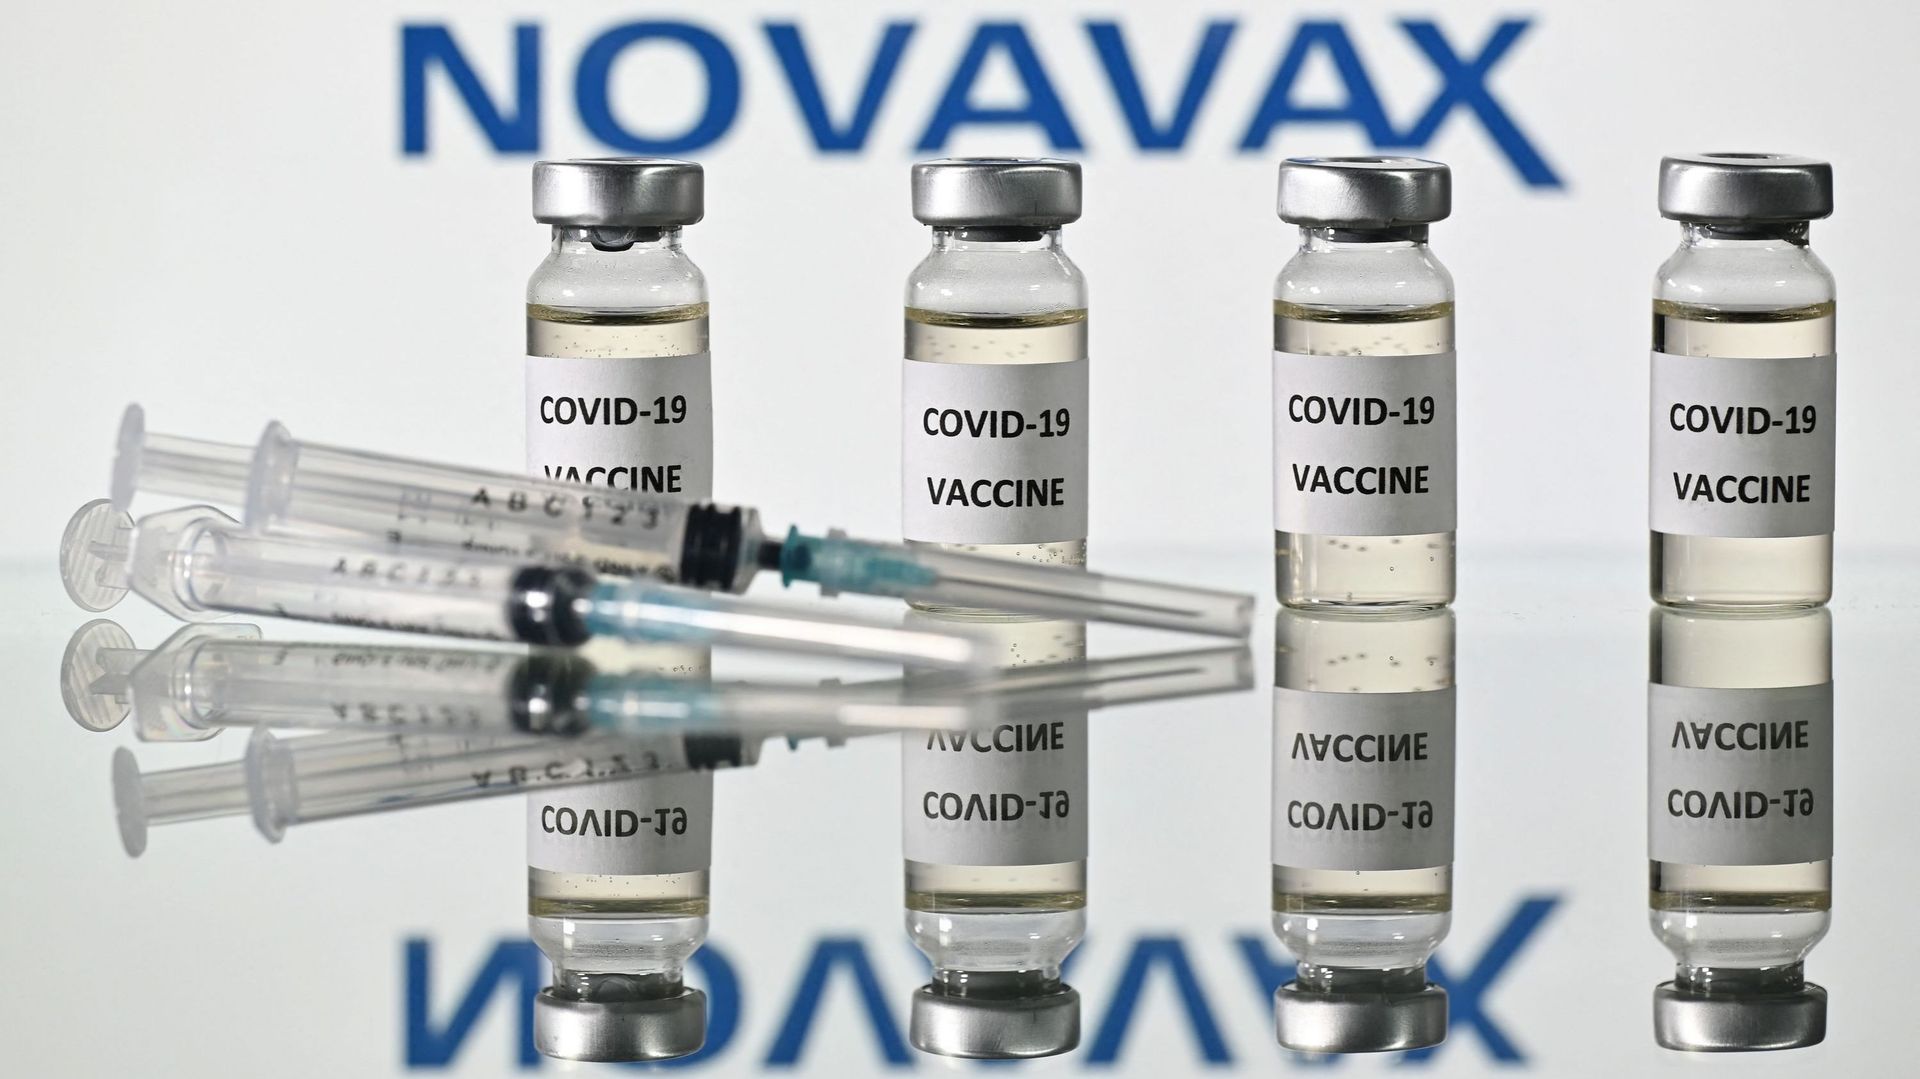 Le vaccin de Novavax à Bruxelles : 17.000 personnes concernées dans un premier temps.